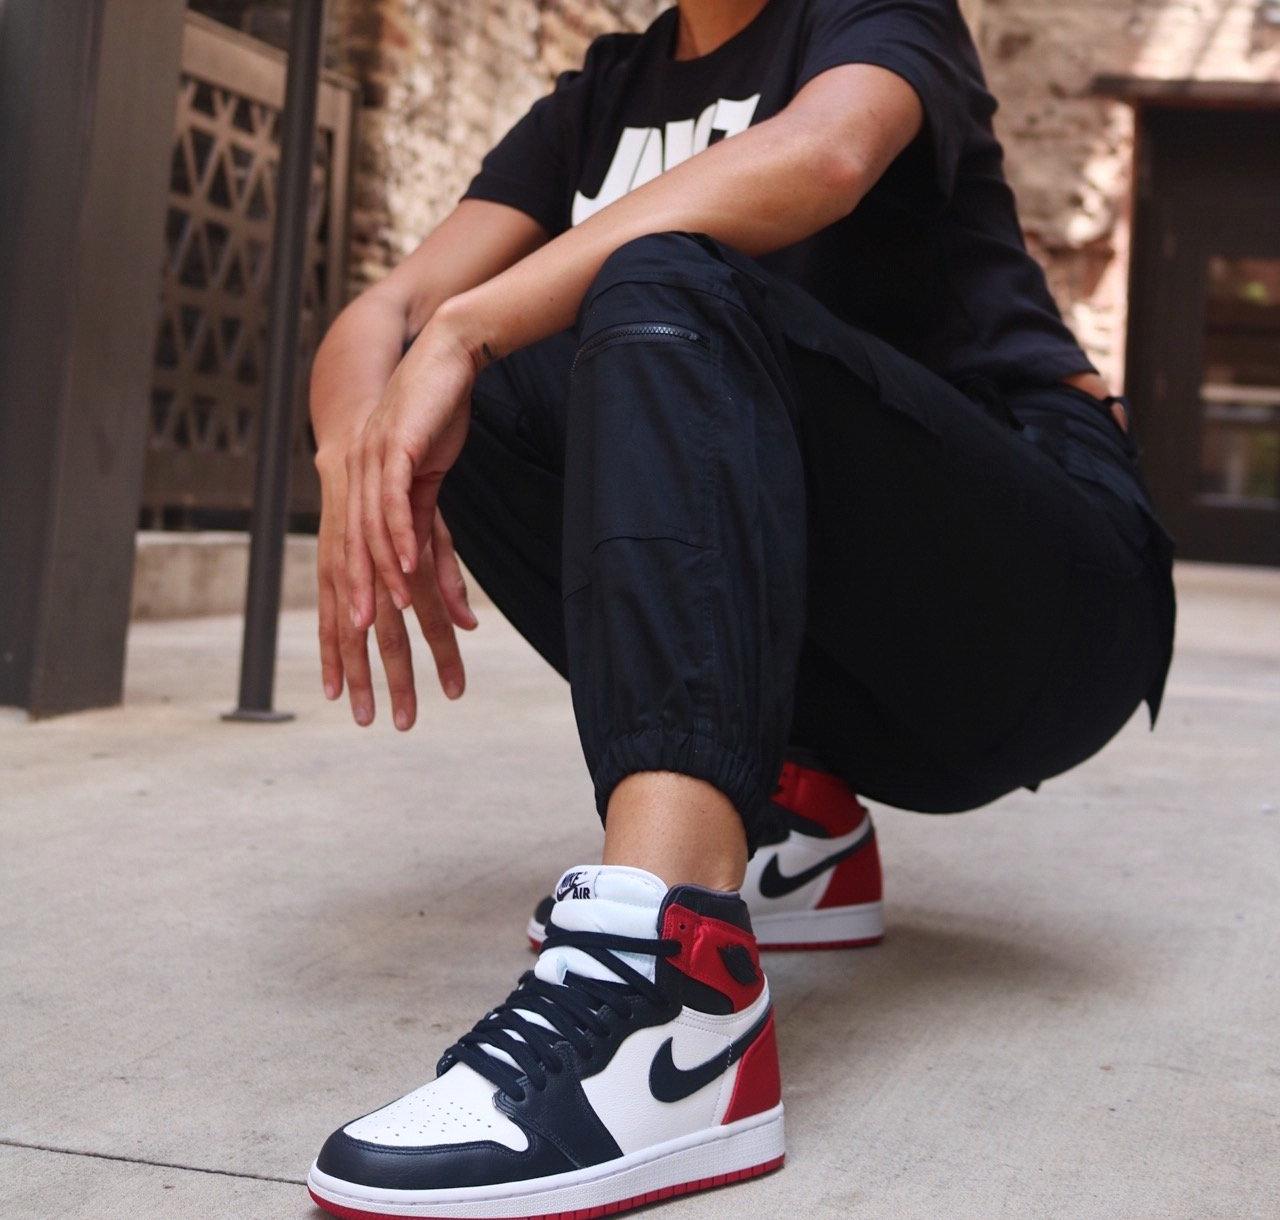 Sneaker Release : Womens Air Jordan 1 Retro High OG u0026#8220;Satin Black  Toeu0026#8221;